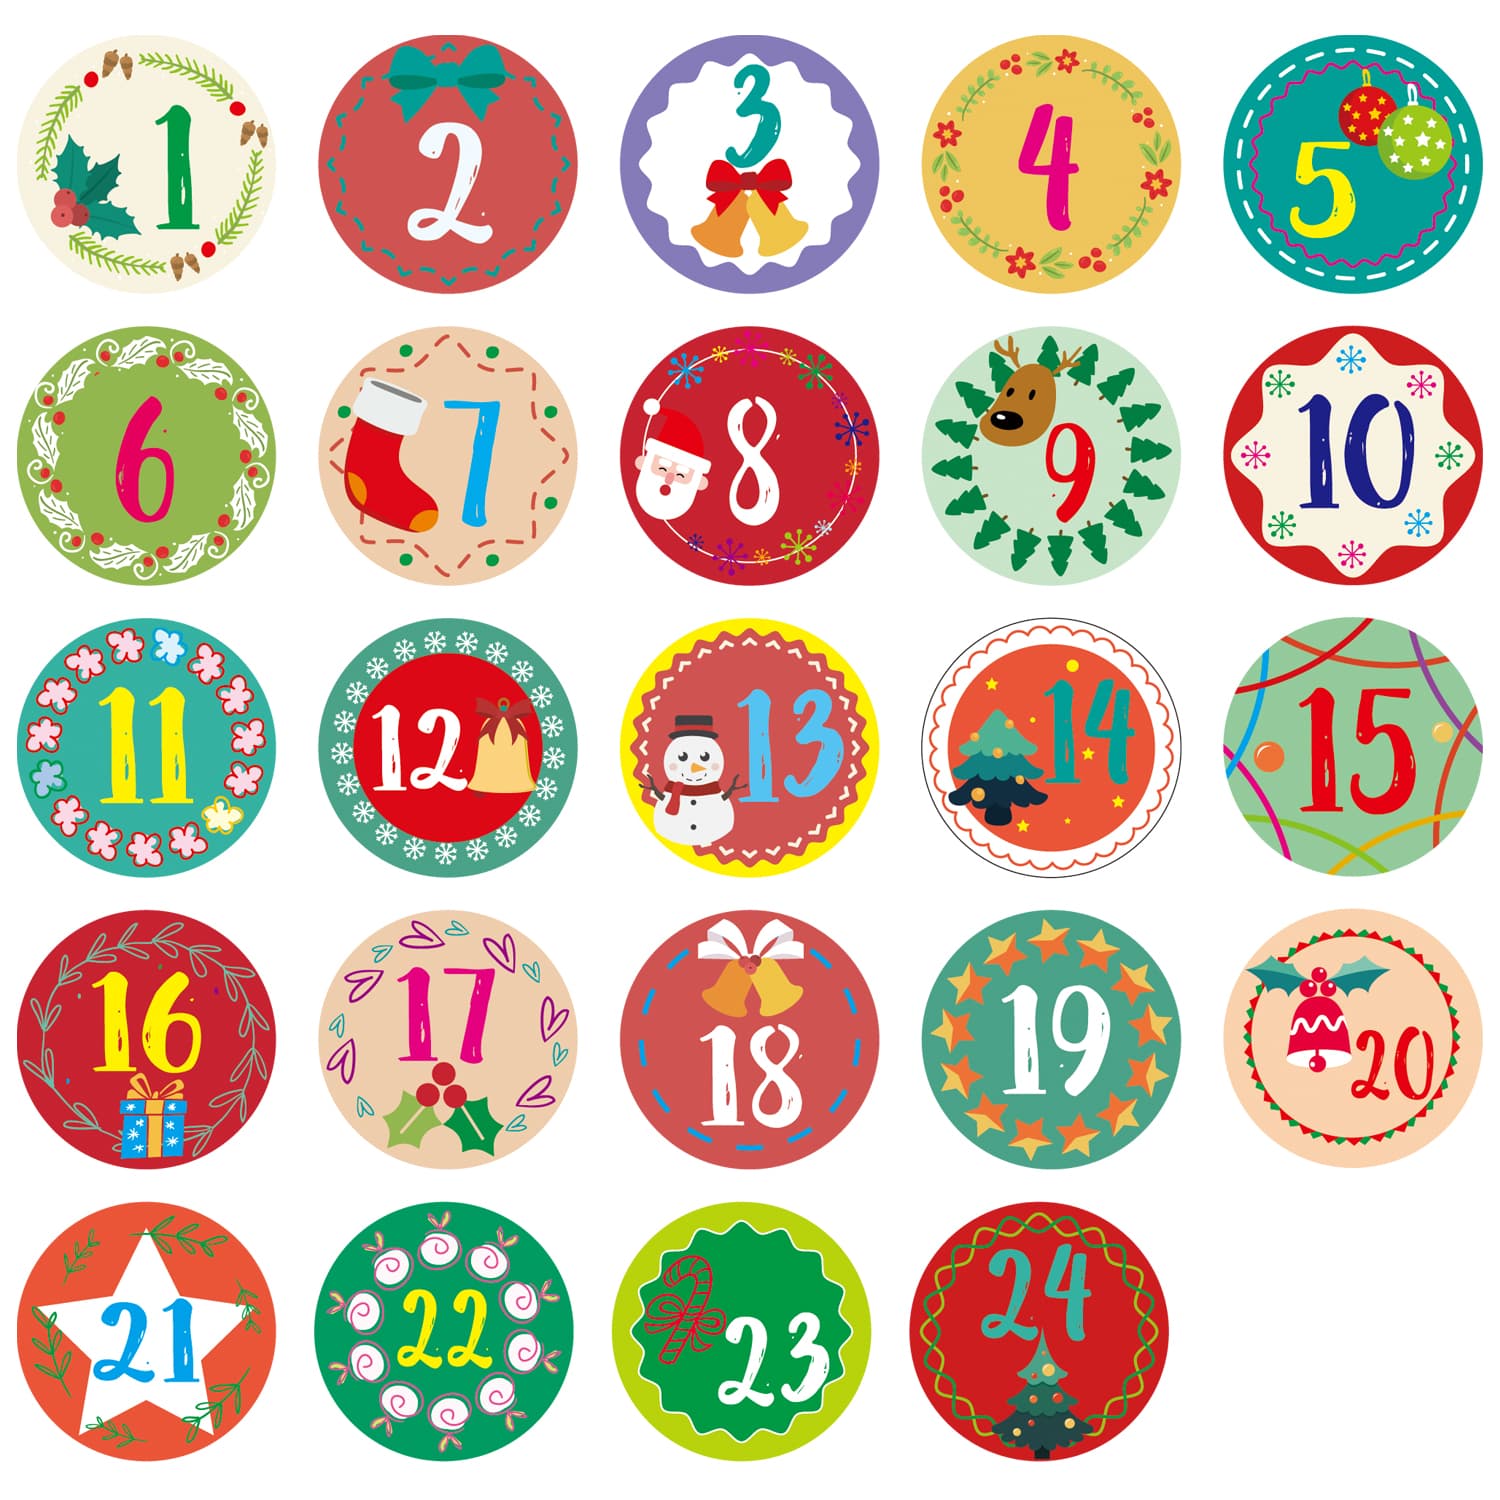 Adventskalender Aufkleber Set - 12 x 24 Sticker für Kalender zum selber basteln für Weihnachten Adventskalenderzahlen Etiketten selbstklebend Zahlen 1-24 Nummern Papiertüten Zahlenaufkleber 